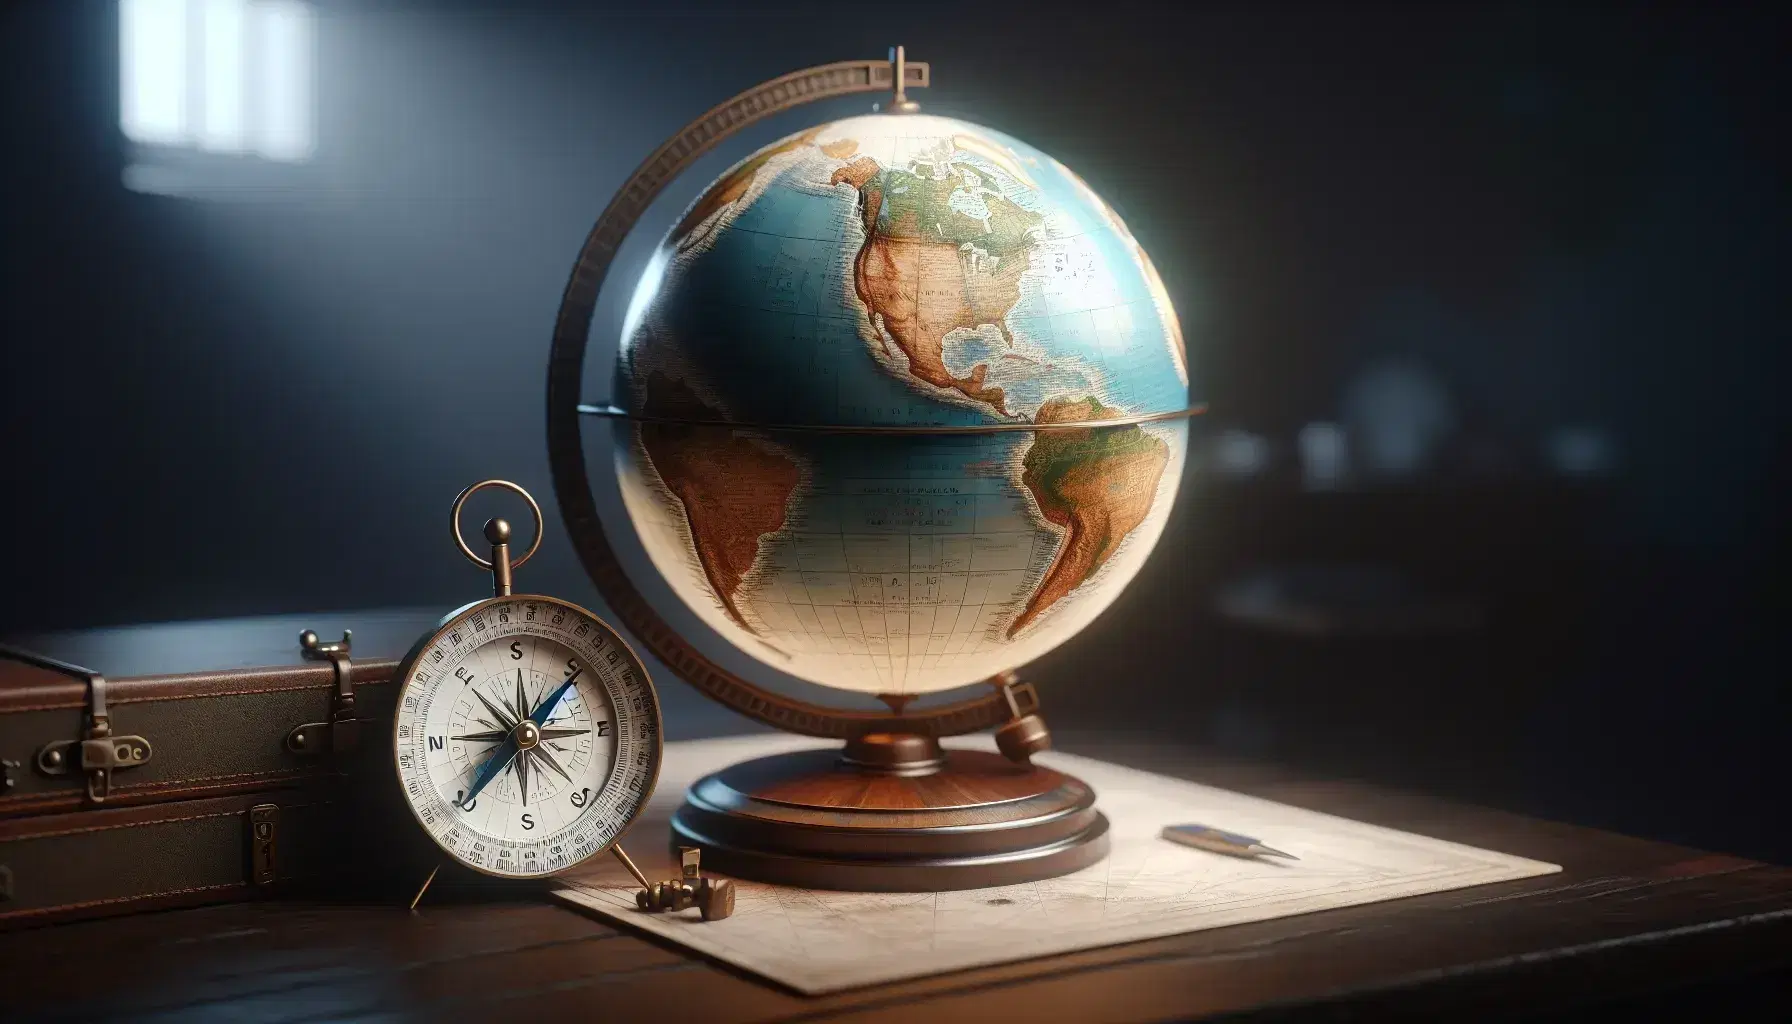 Globo terráqueo tridimensional iluminado sobre soporte de madera con brújula antigua, destacando continentes y océanos en tonos azules y verdes.